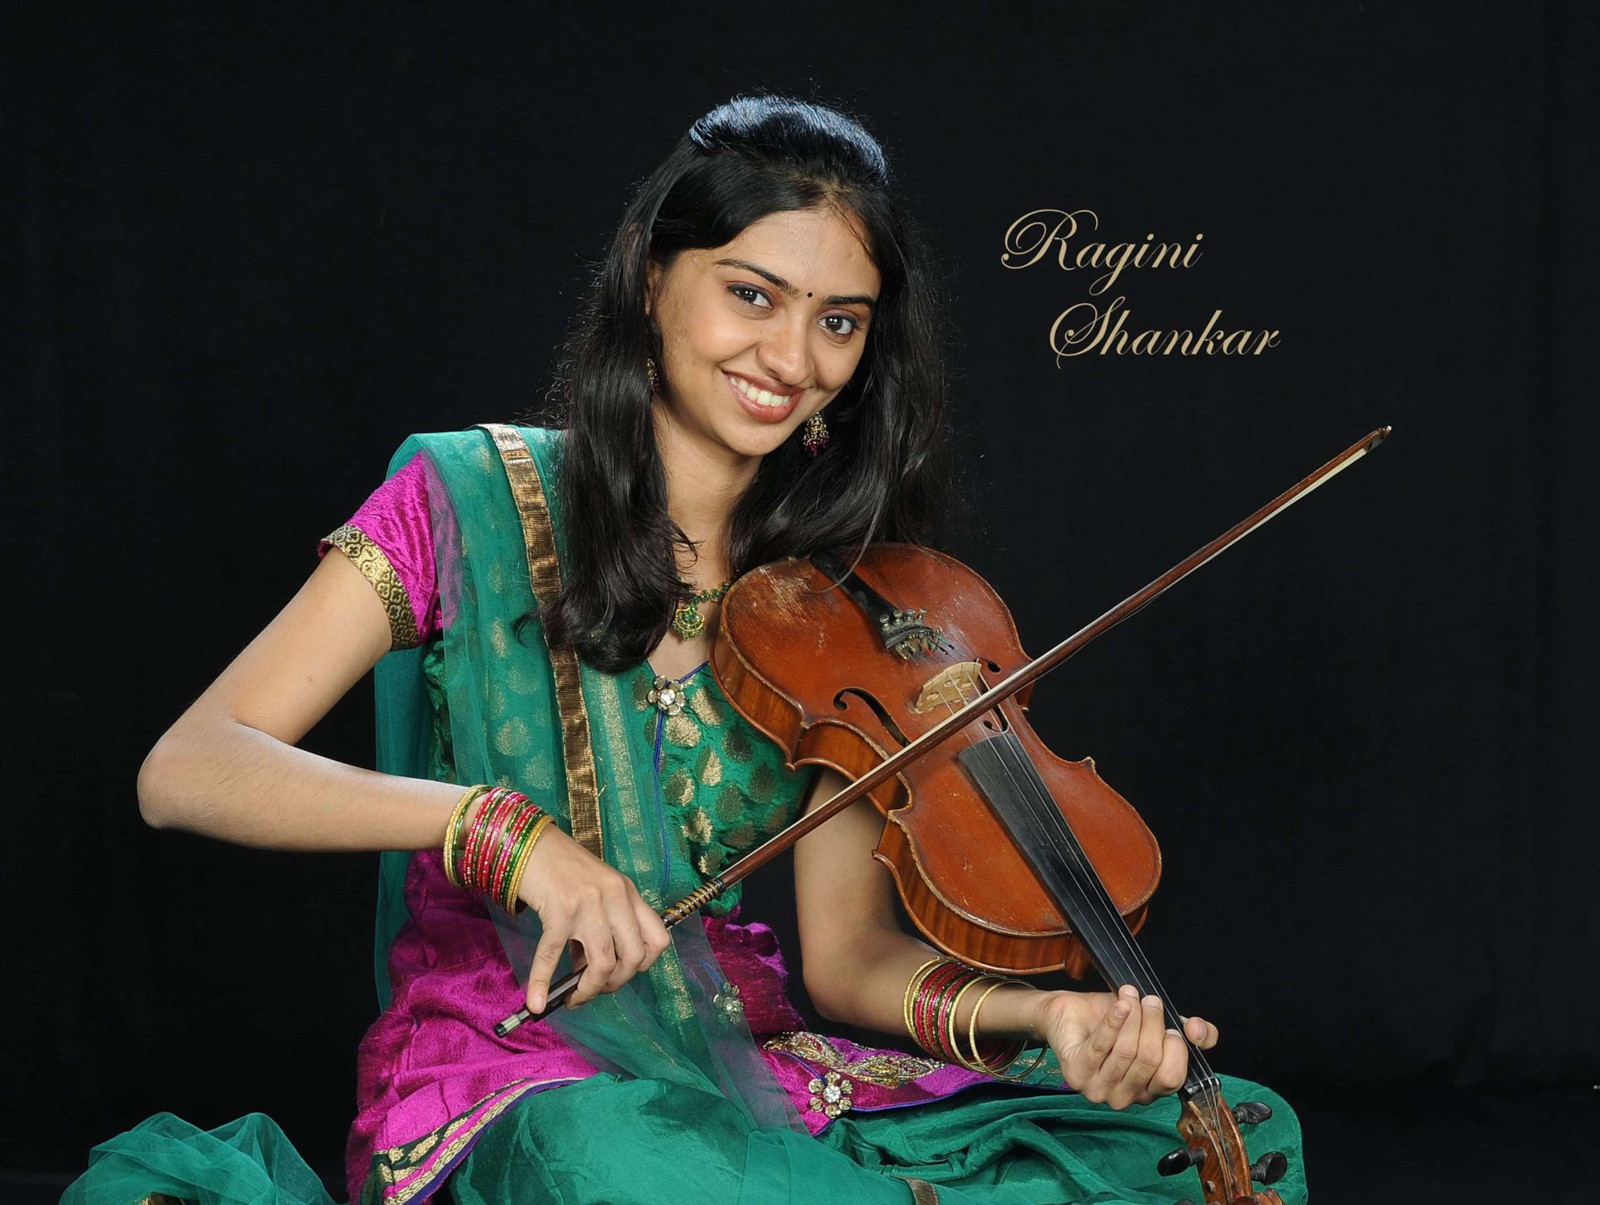 Ragini Shankar playing violin